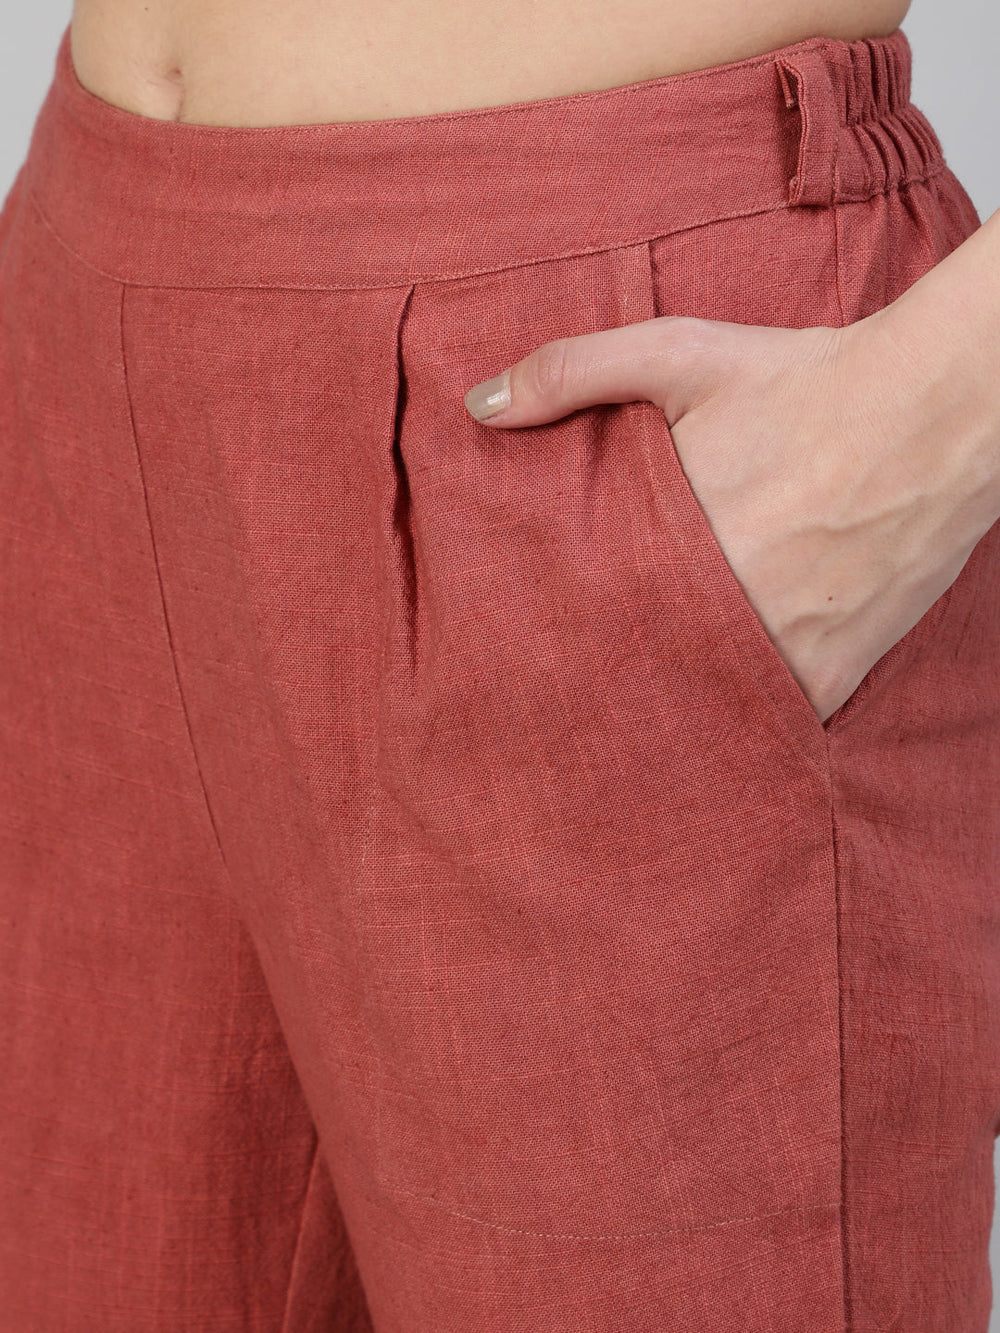 Shop comfortable pants for women